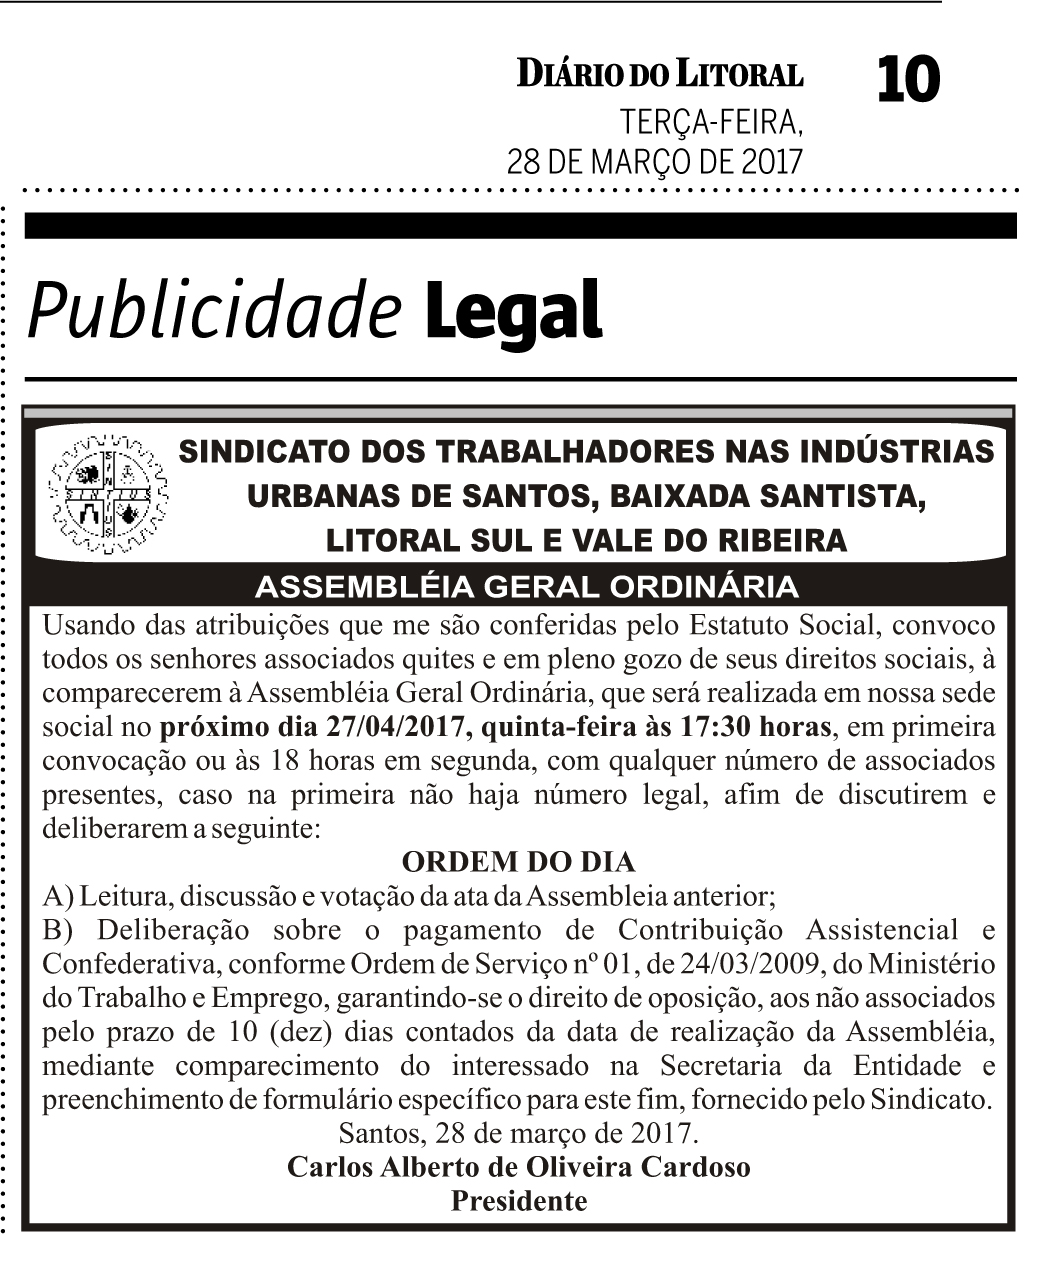 Edital da Assembleia Confederativa / Assistencial, publicada no Diário do Litoral em 28/03/2017.